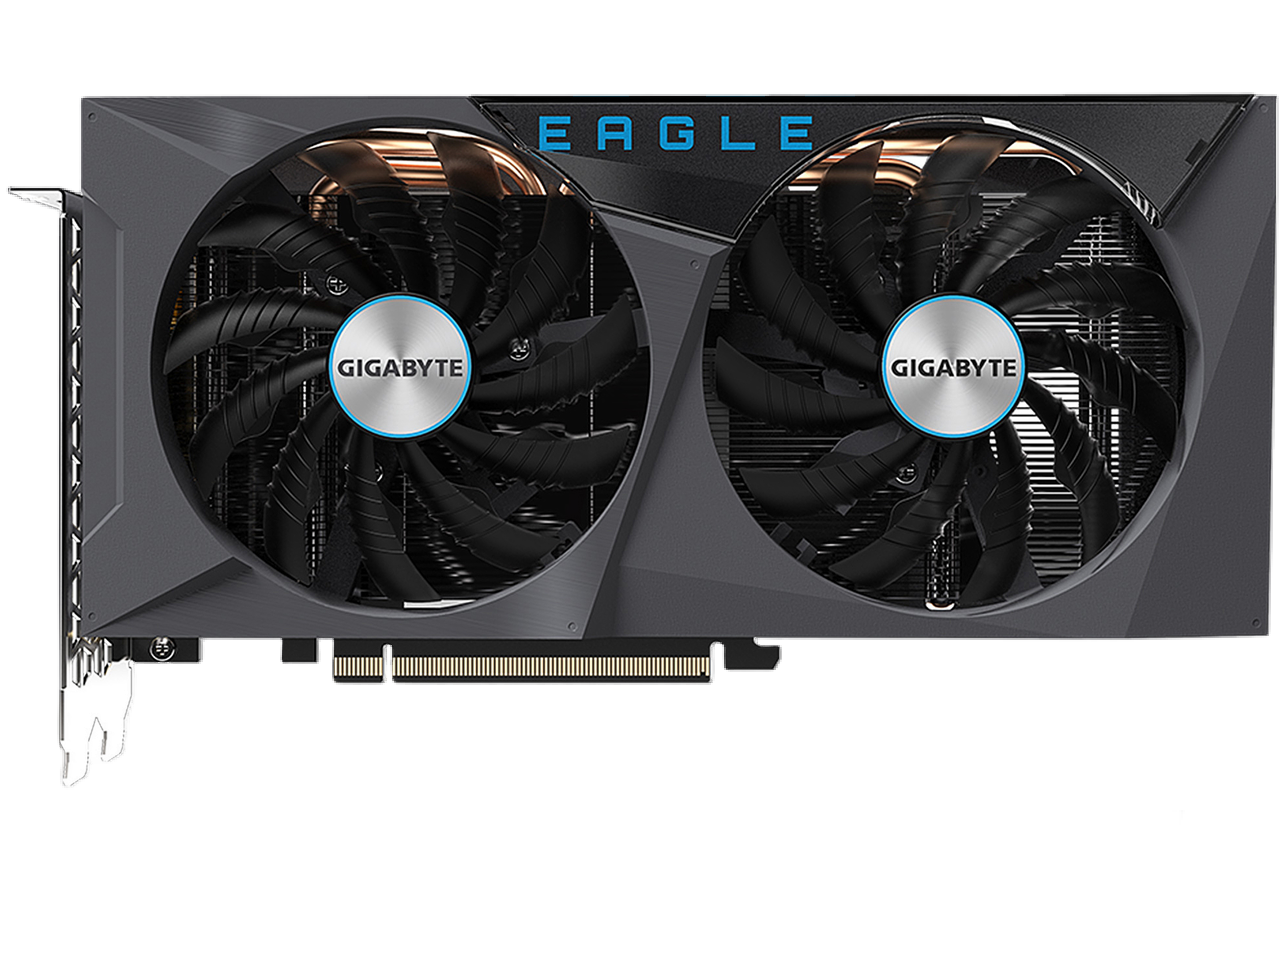 GIGABYTE Eagle OC GeForce RTX 3060 12GB GDDR6 PCI Express 4.0 ATX Video Card GV-N3060EAGLE OC-12GD (rev. 2.0) (LHR)